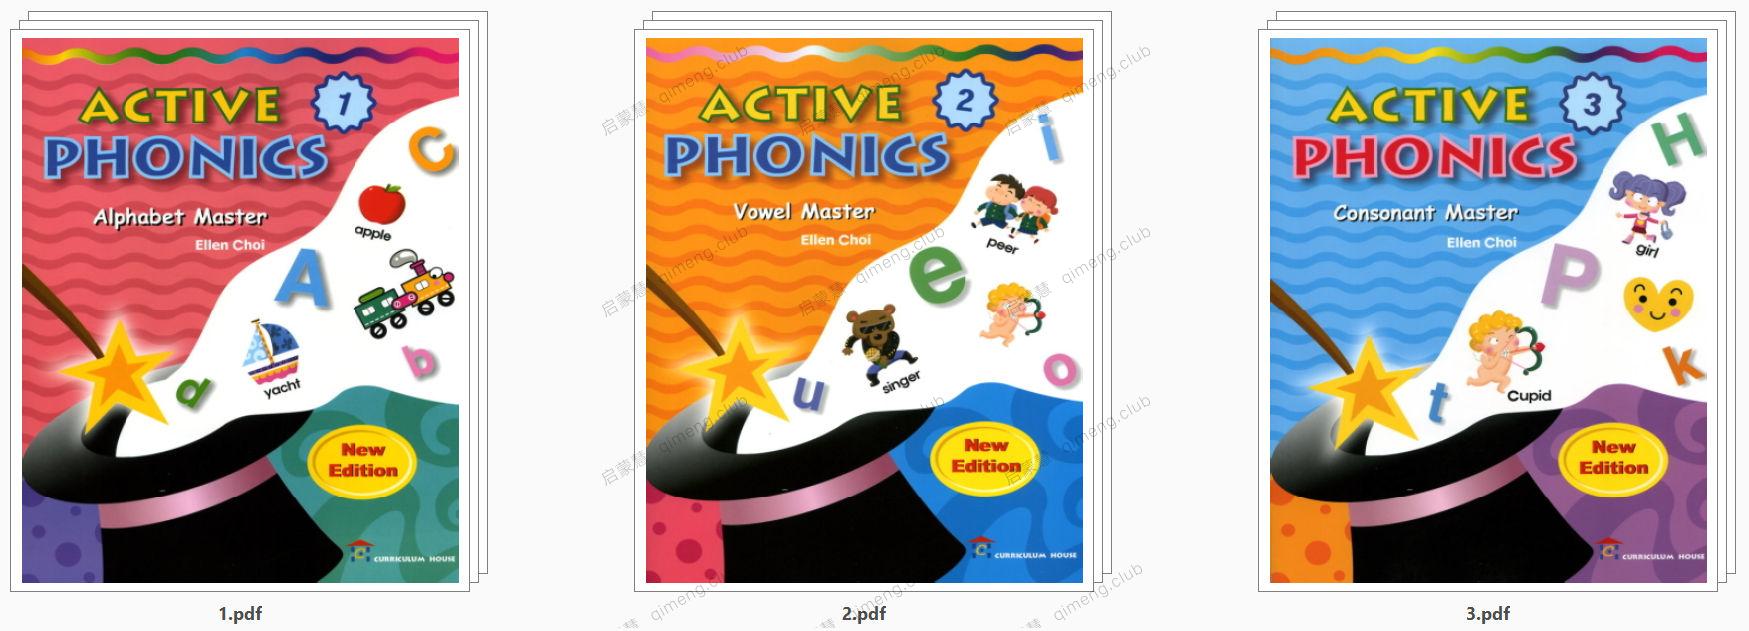 一套高颜值自然拼读练习册《Active Phonics》全3册